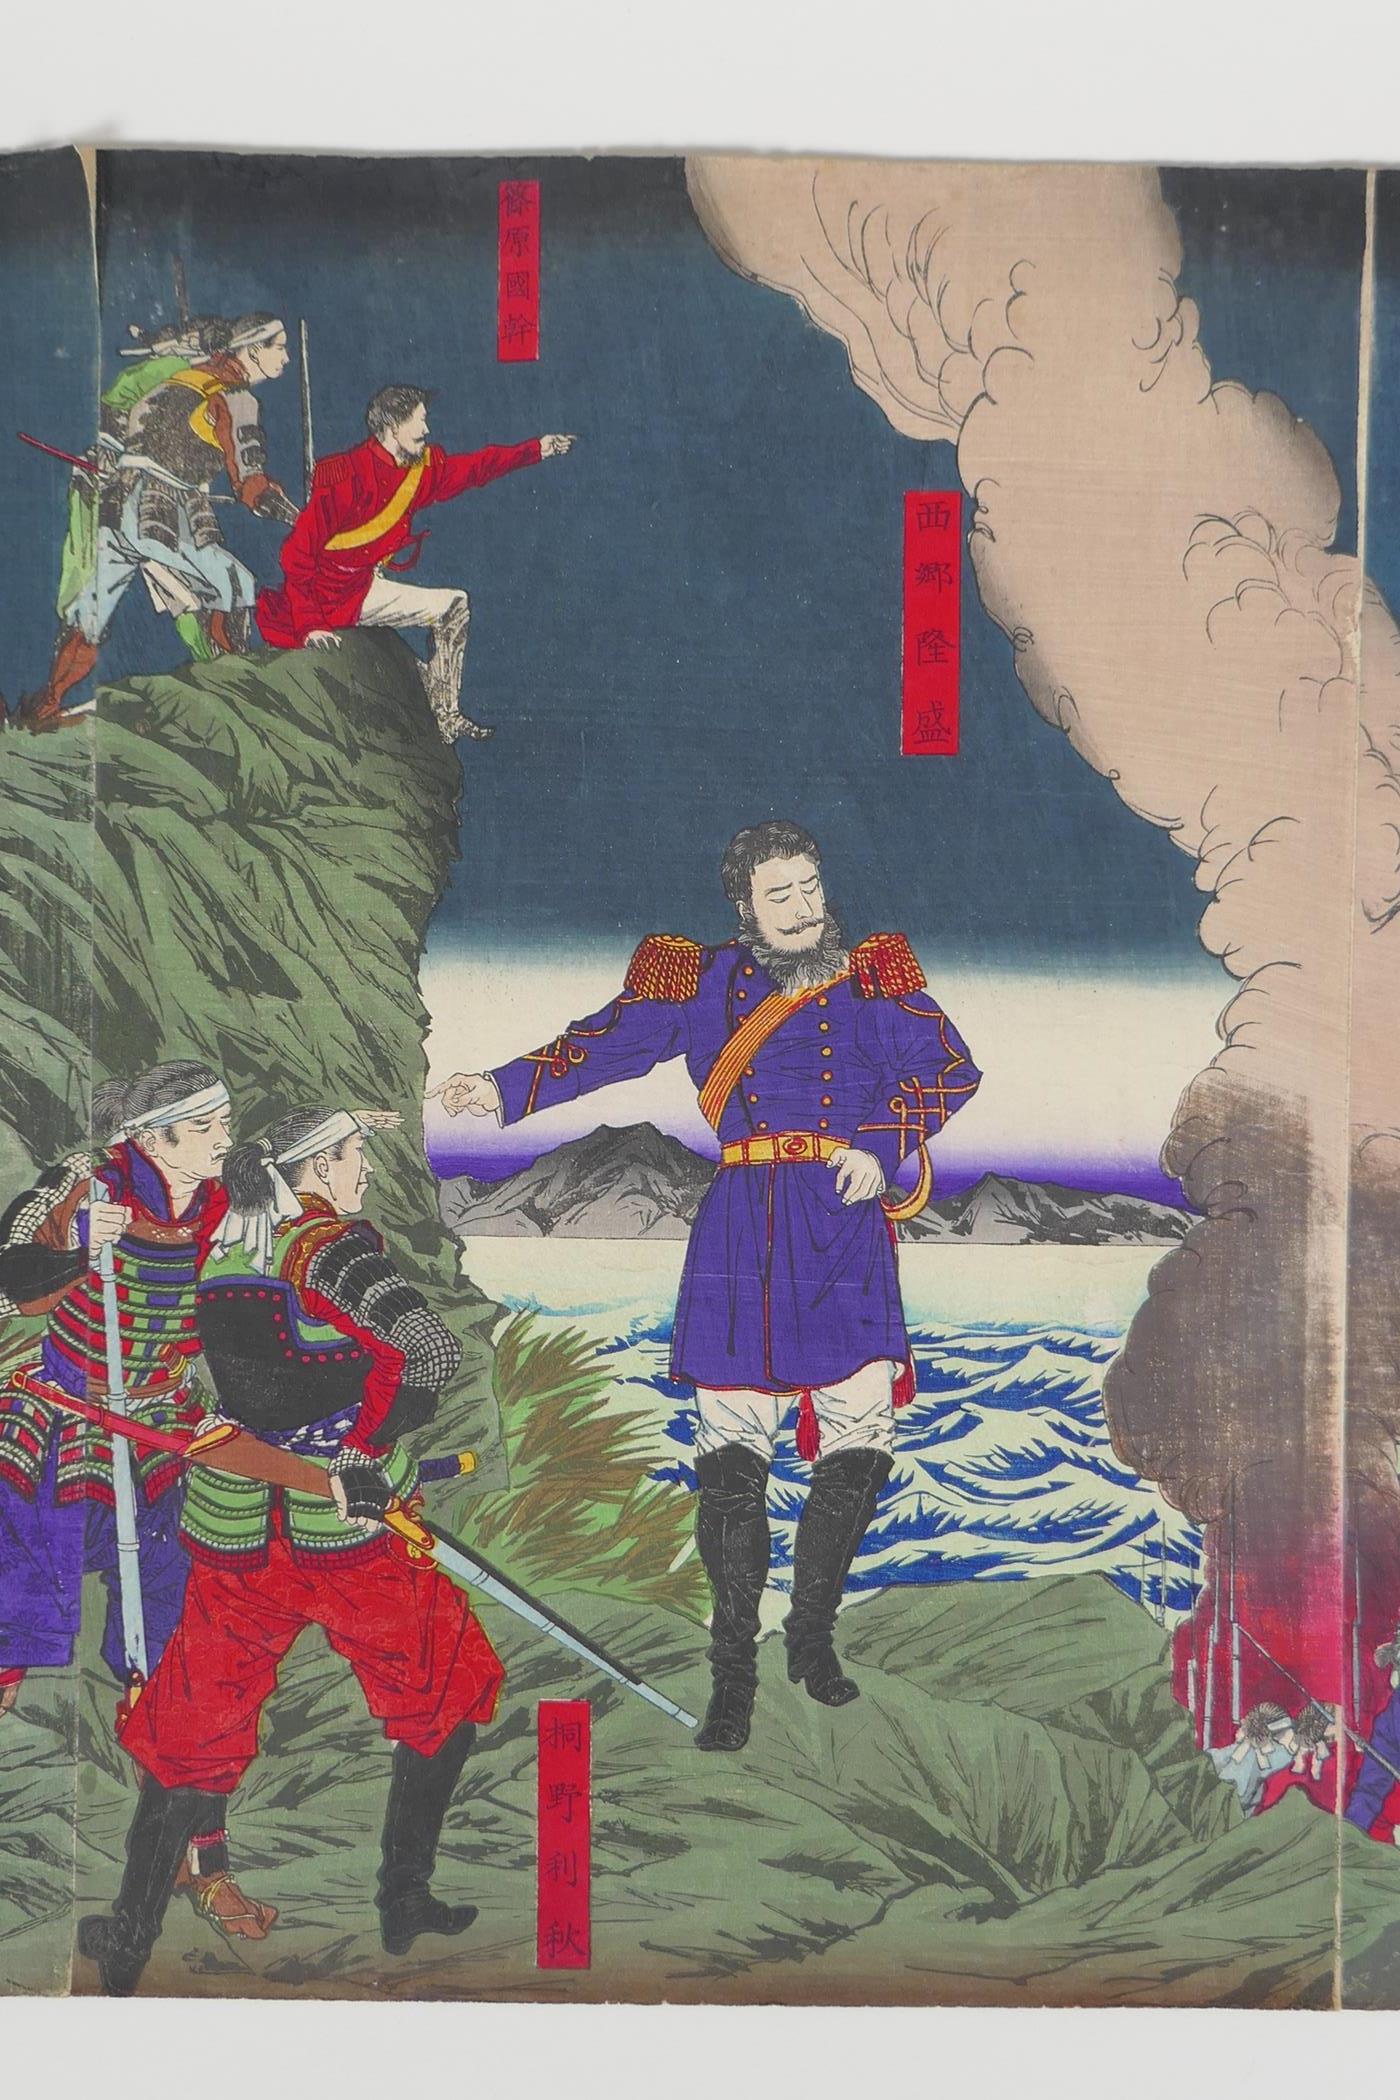 Tsukioka Yoshitoshi, (Japanese, 1839 - 1892), 'Insurrection in Kagoshima' or 'The Rebel Insurrection - Image 3 of 9